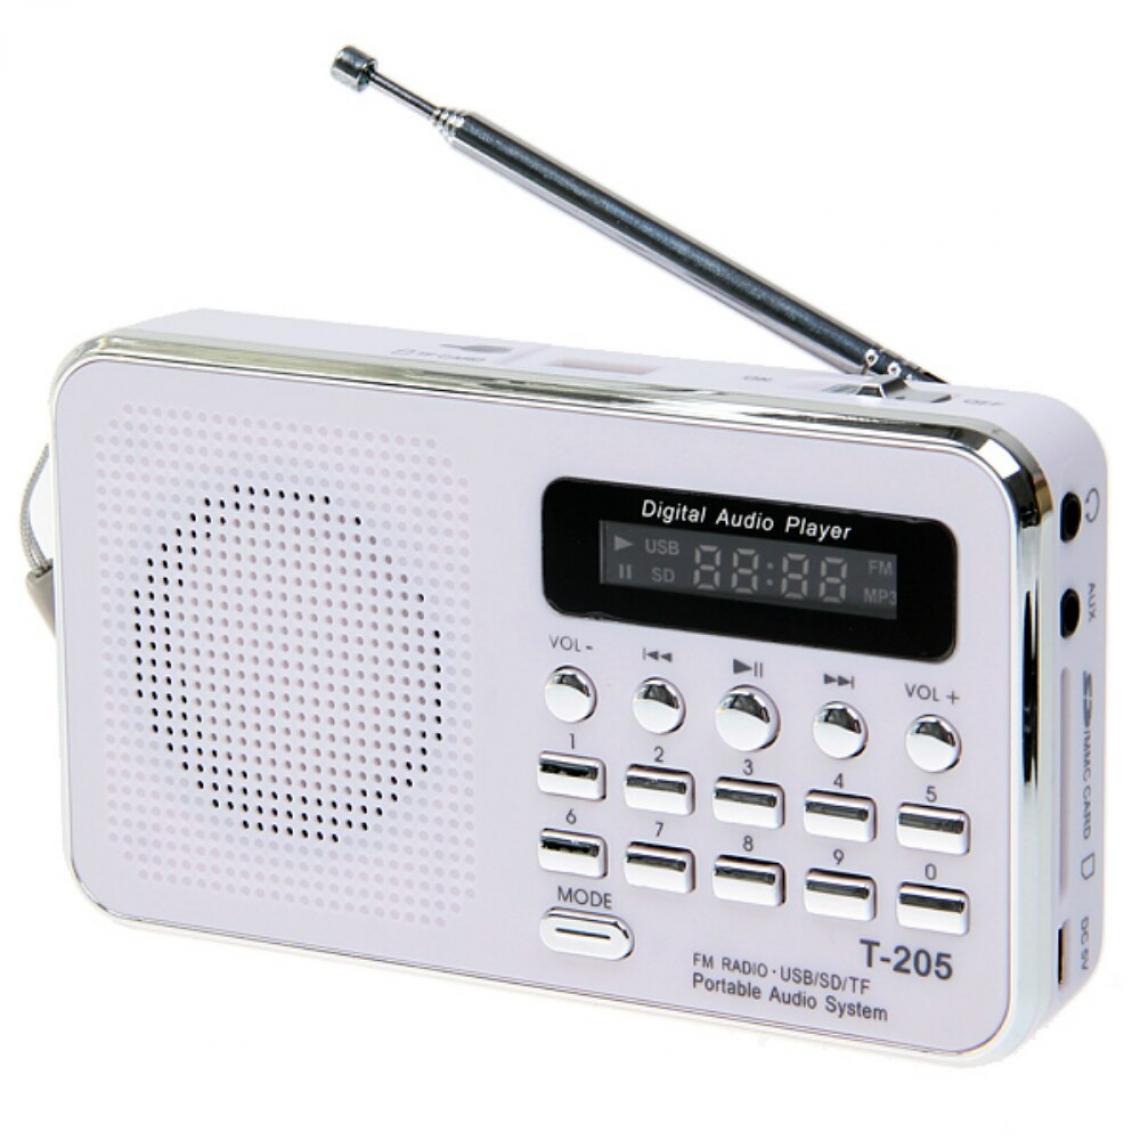 Universal - Vente chaude T205 FM Radio Portable HiFi Haut-parleur Multimédia Numérique MP3 Musique Haut-parleur Blanc Camping Outdoor Sports | Radio - Radio